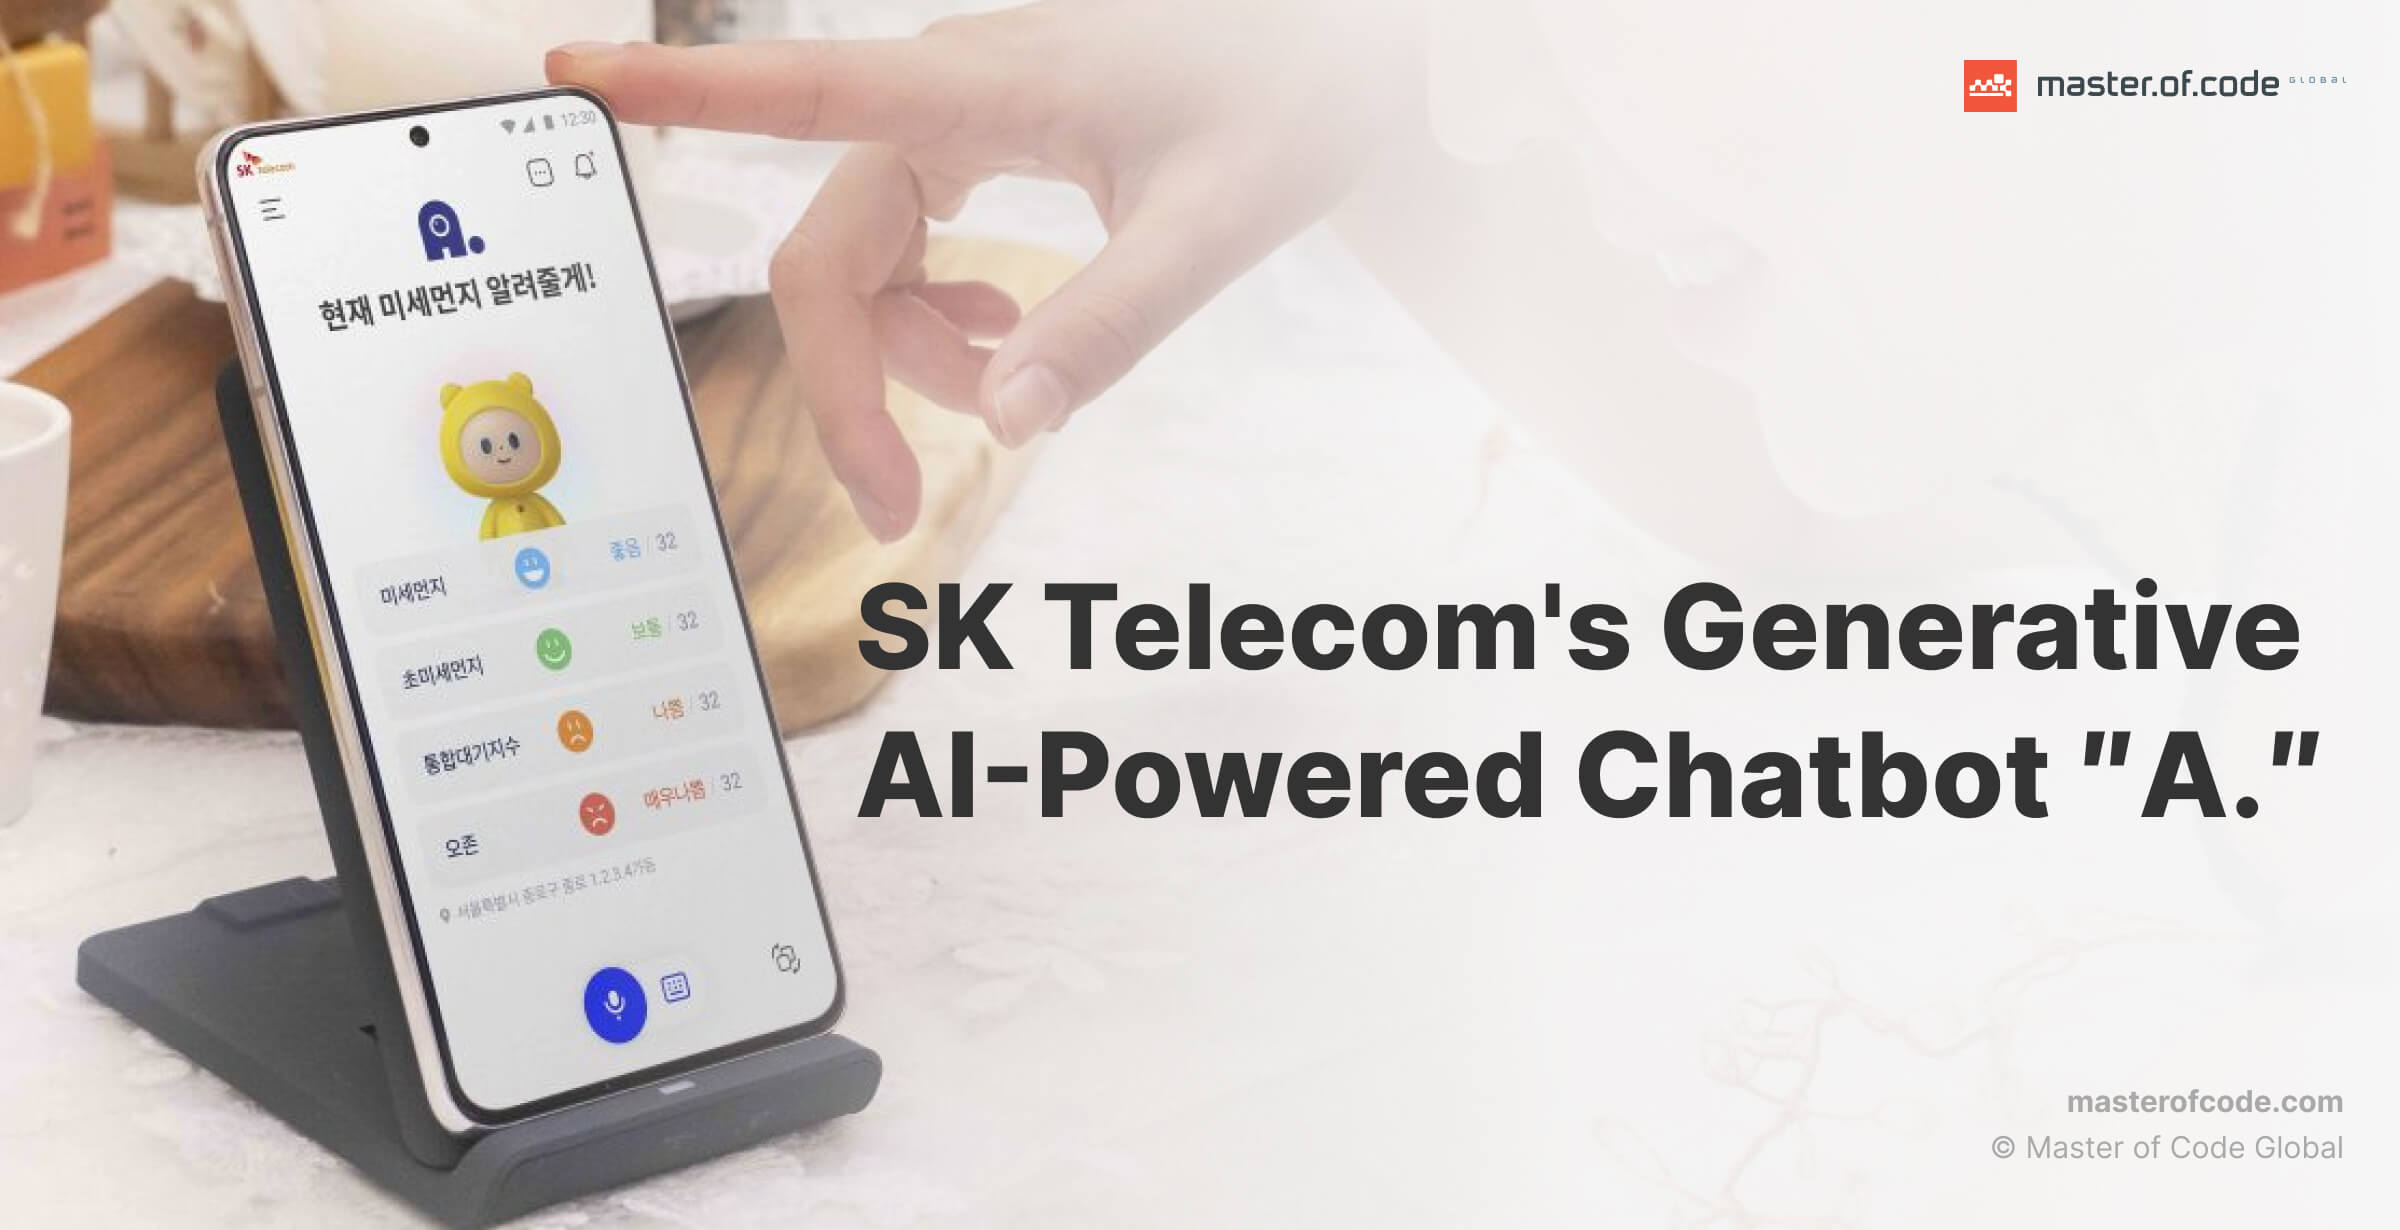 SK Telecom's Gen AI-Powered Chatbot ″A.″